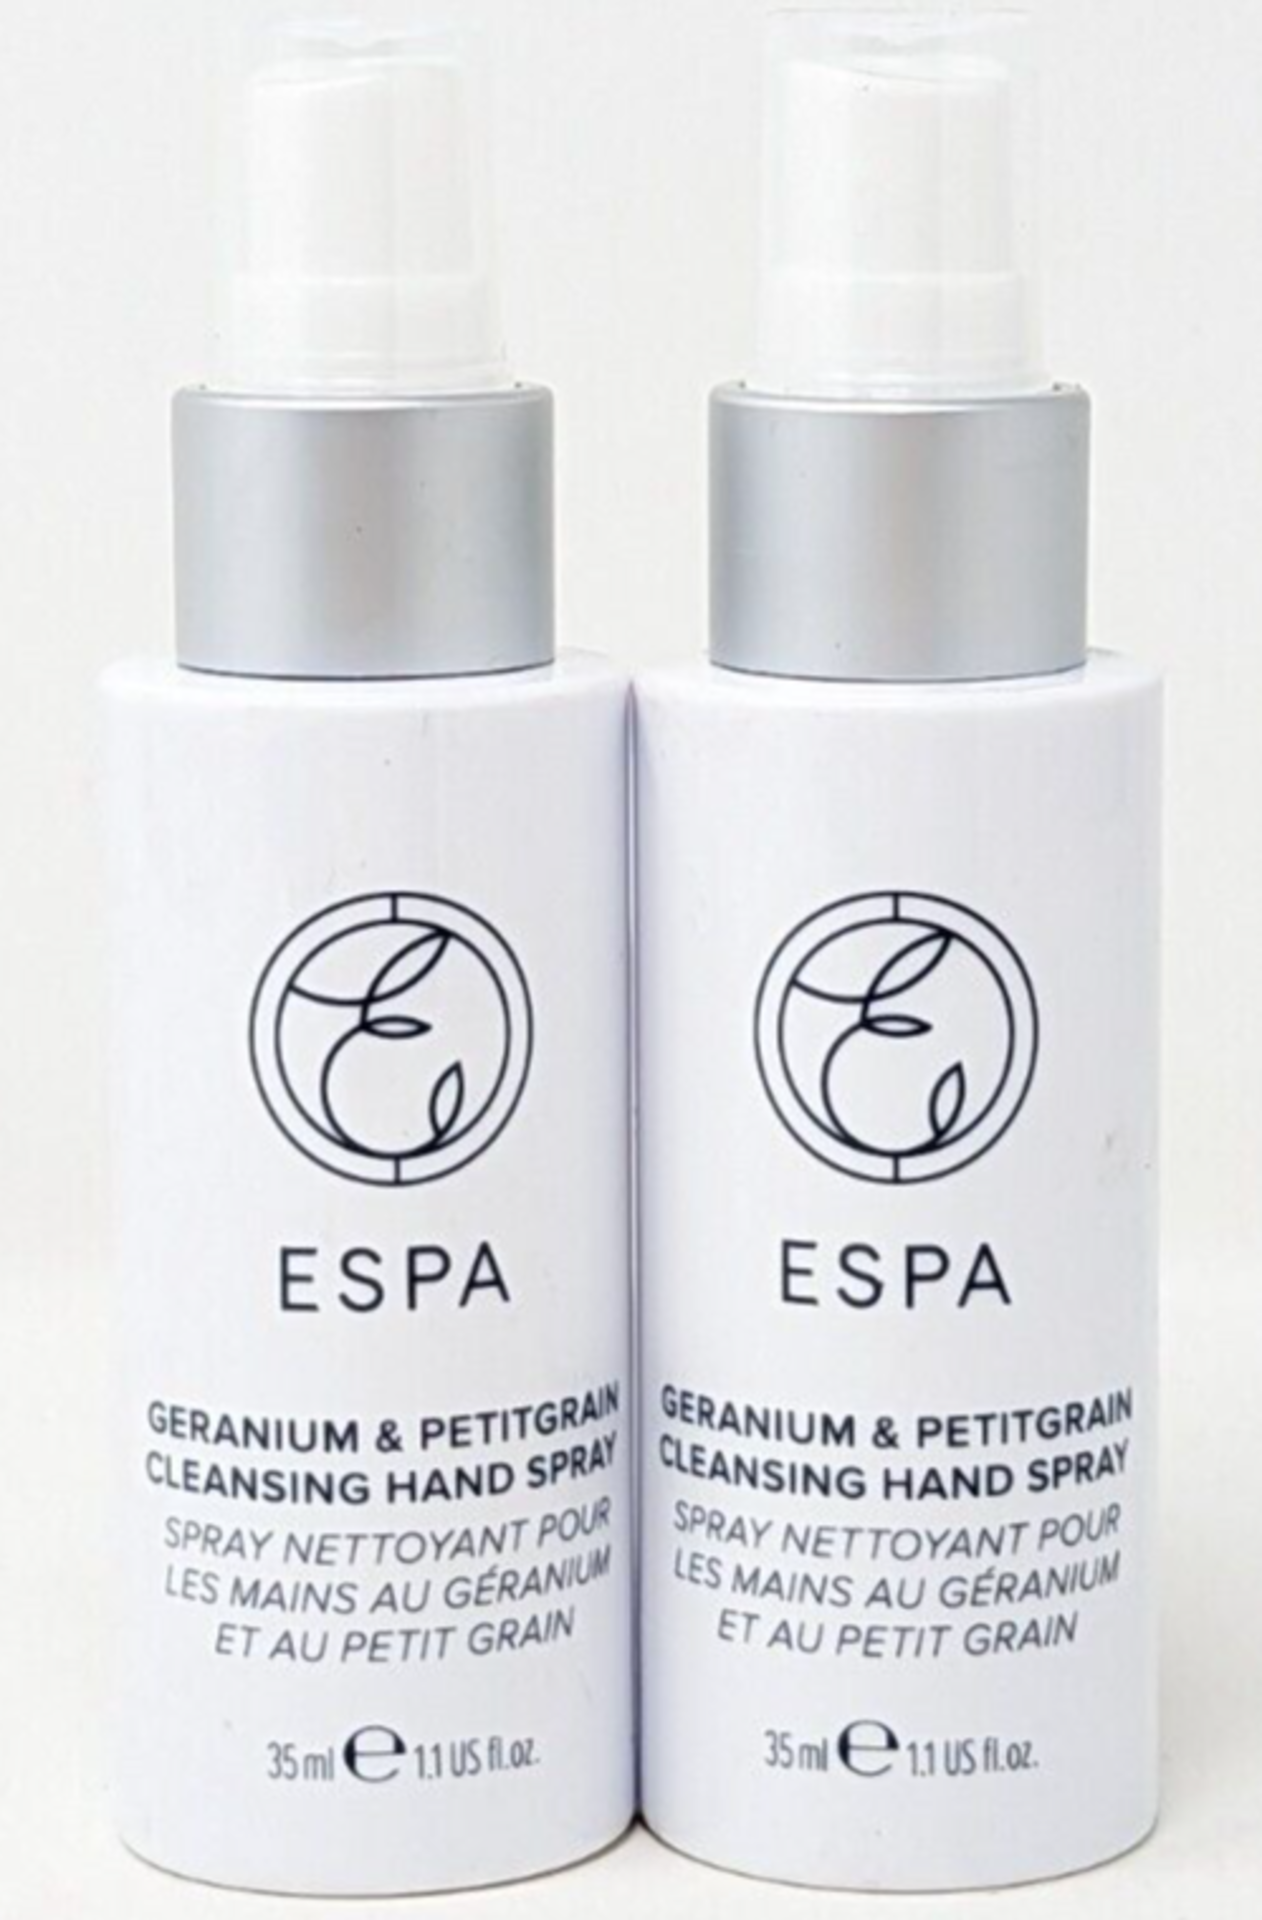 15x NEW ESPA Geranium & Petitgrain Cleansing Hand Spray 35ml. RRP £15 Each. (EBR). An alcohol-